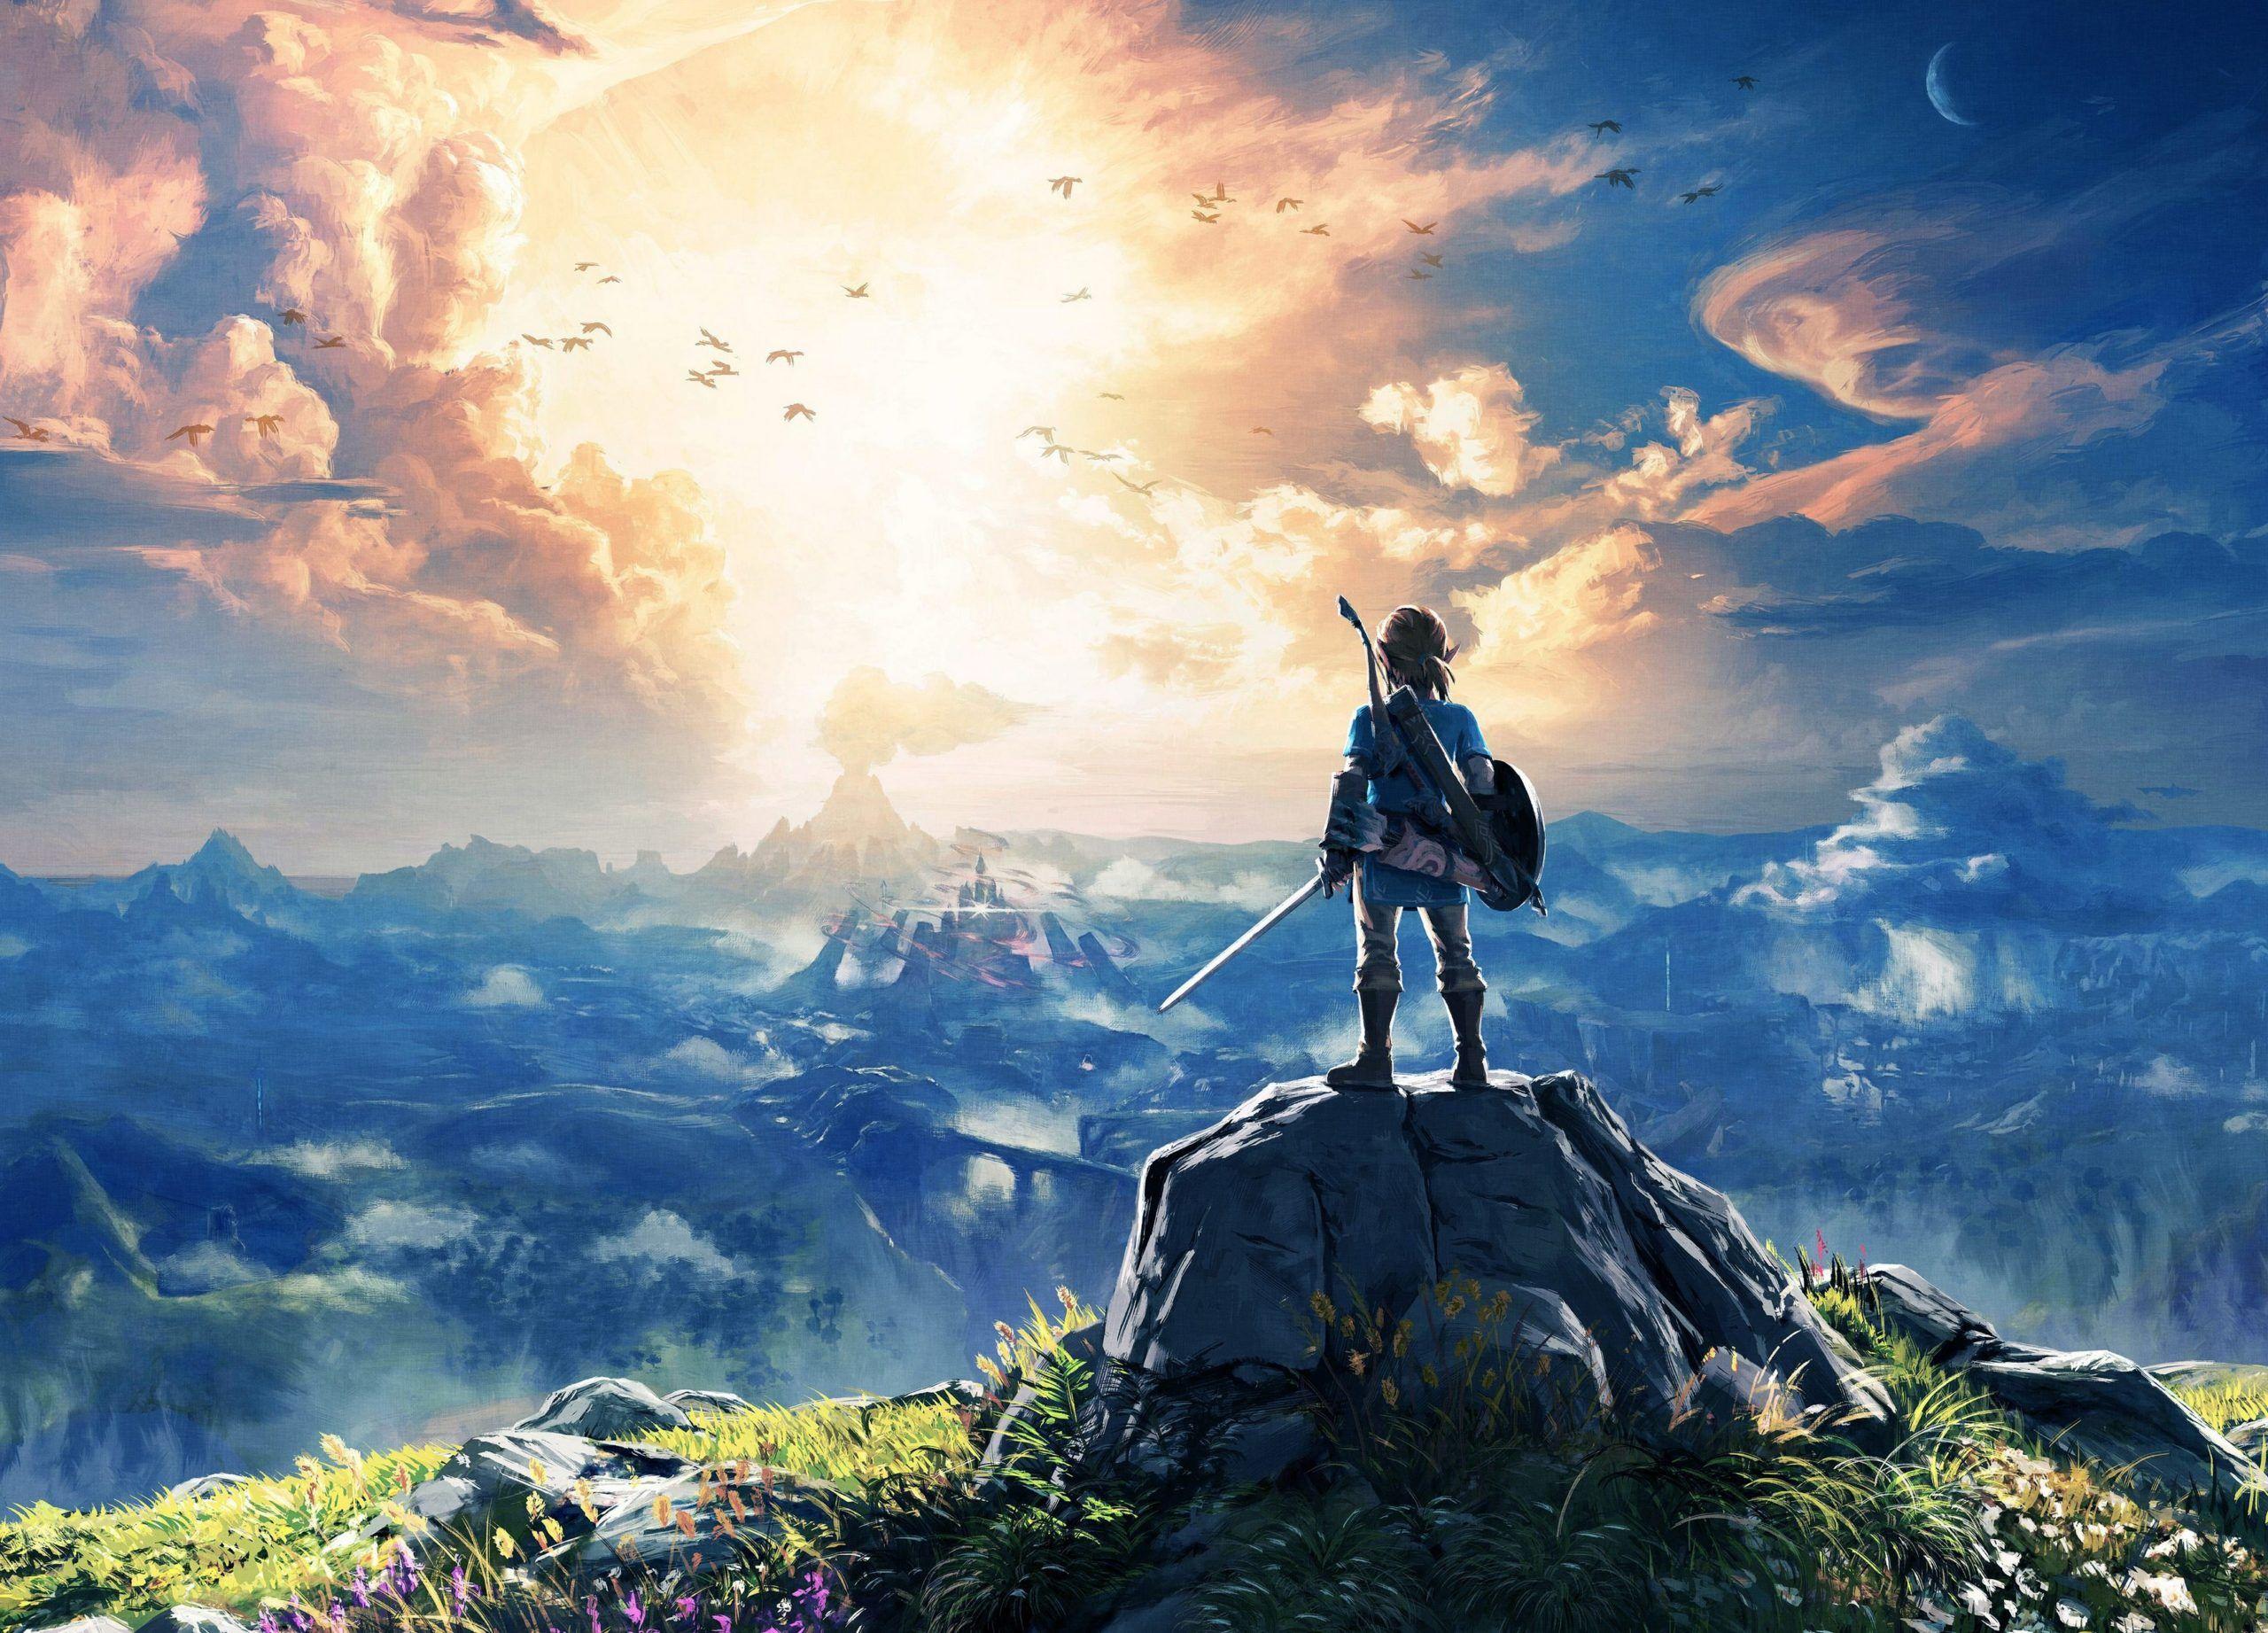 2560 x 1843 · jpeg - Zelda Landscape Wallpapers - Top Free Zelda Landscape Backgrounds ...